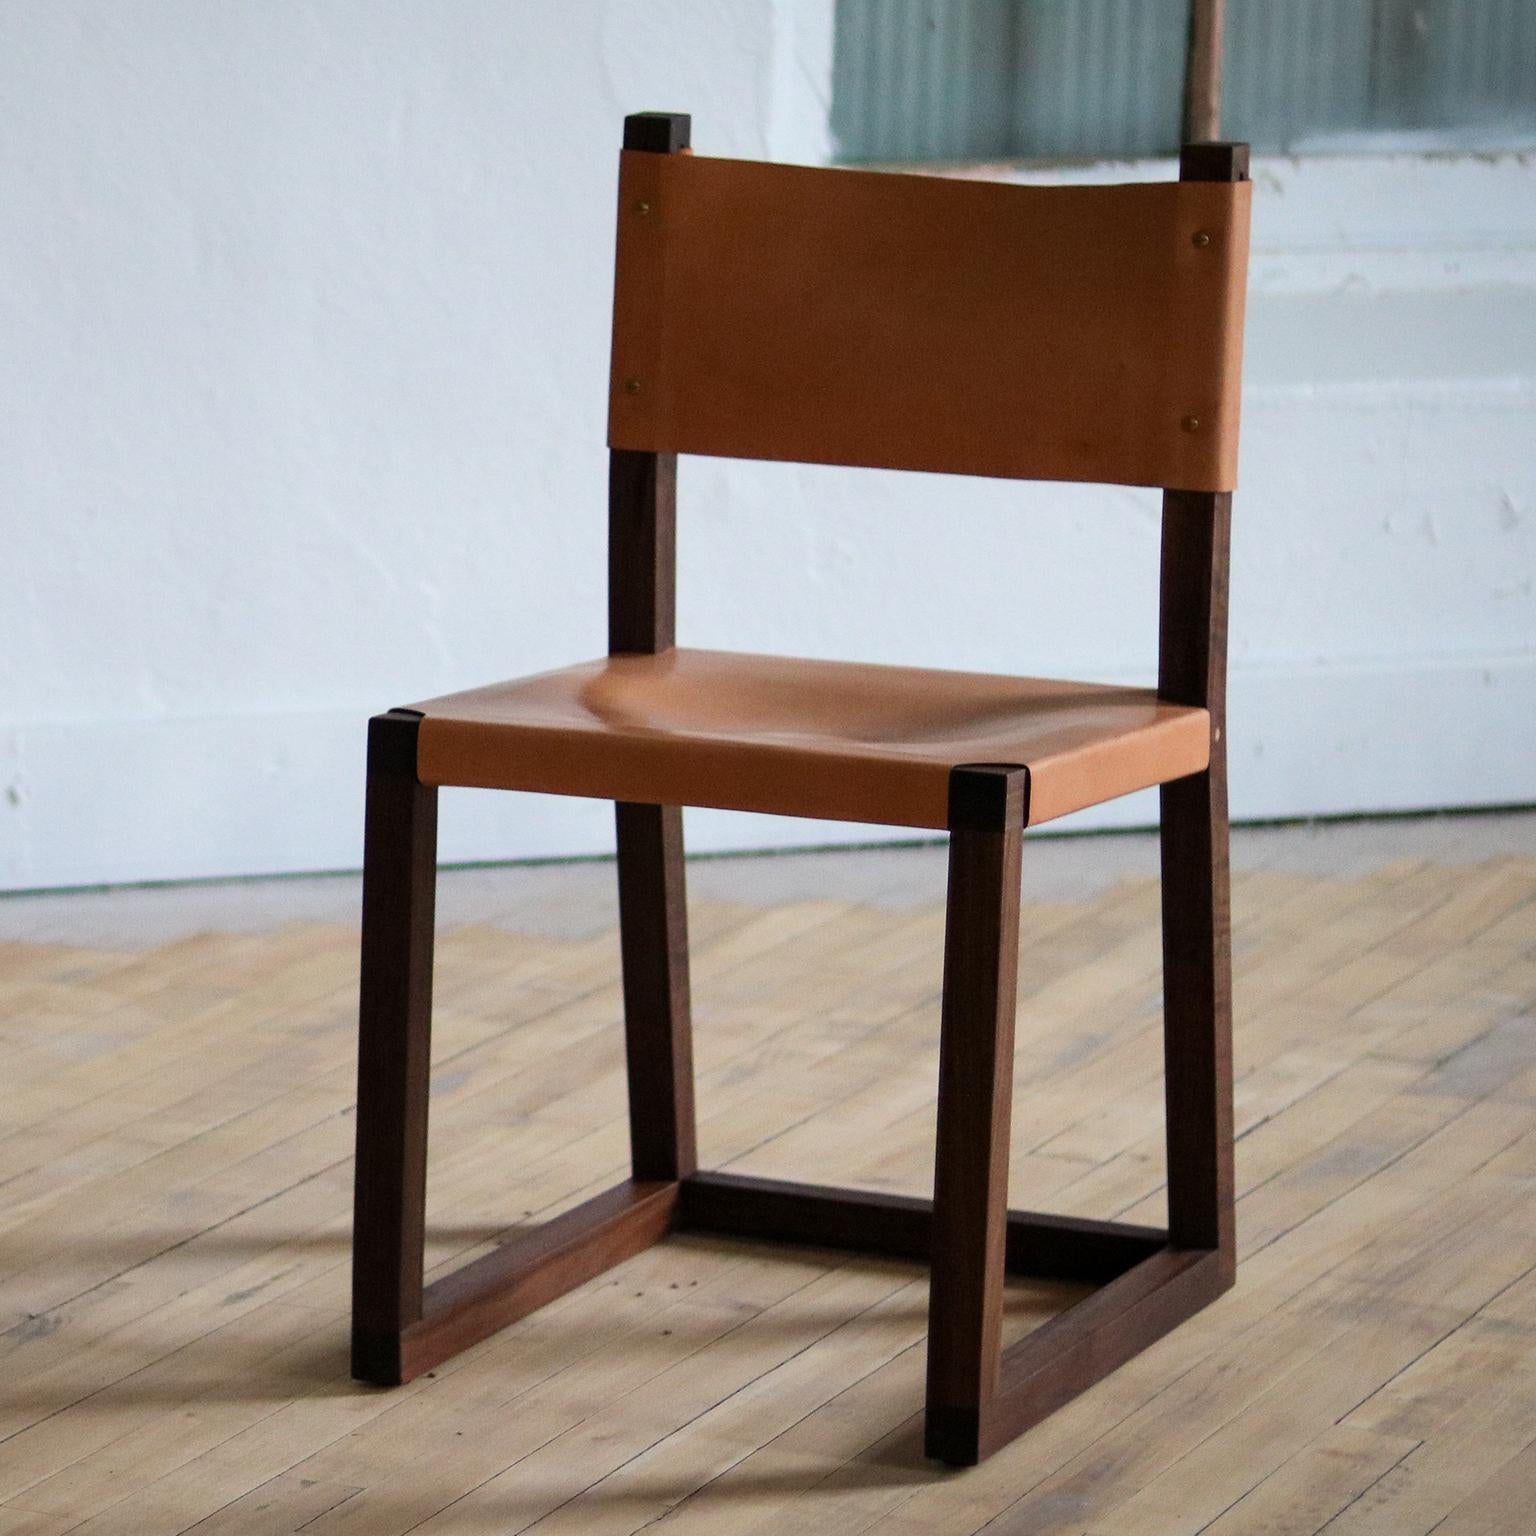 La chaise d'appoint Hypatia présente un design minimaliste. Des détails subtils et réfléchis mettent en évidence les caractéristiques implicites des matériaux, travaillant finalement en harmonie pour créer une Silhouette simpliste mais